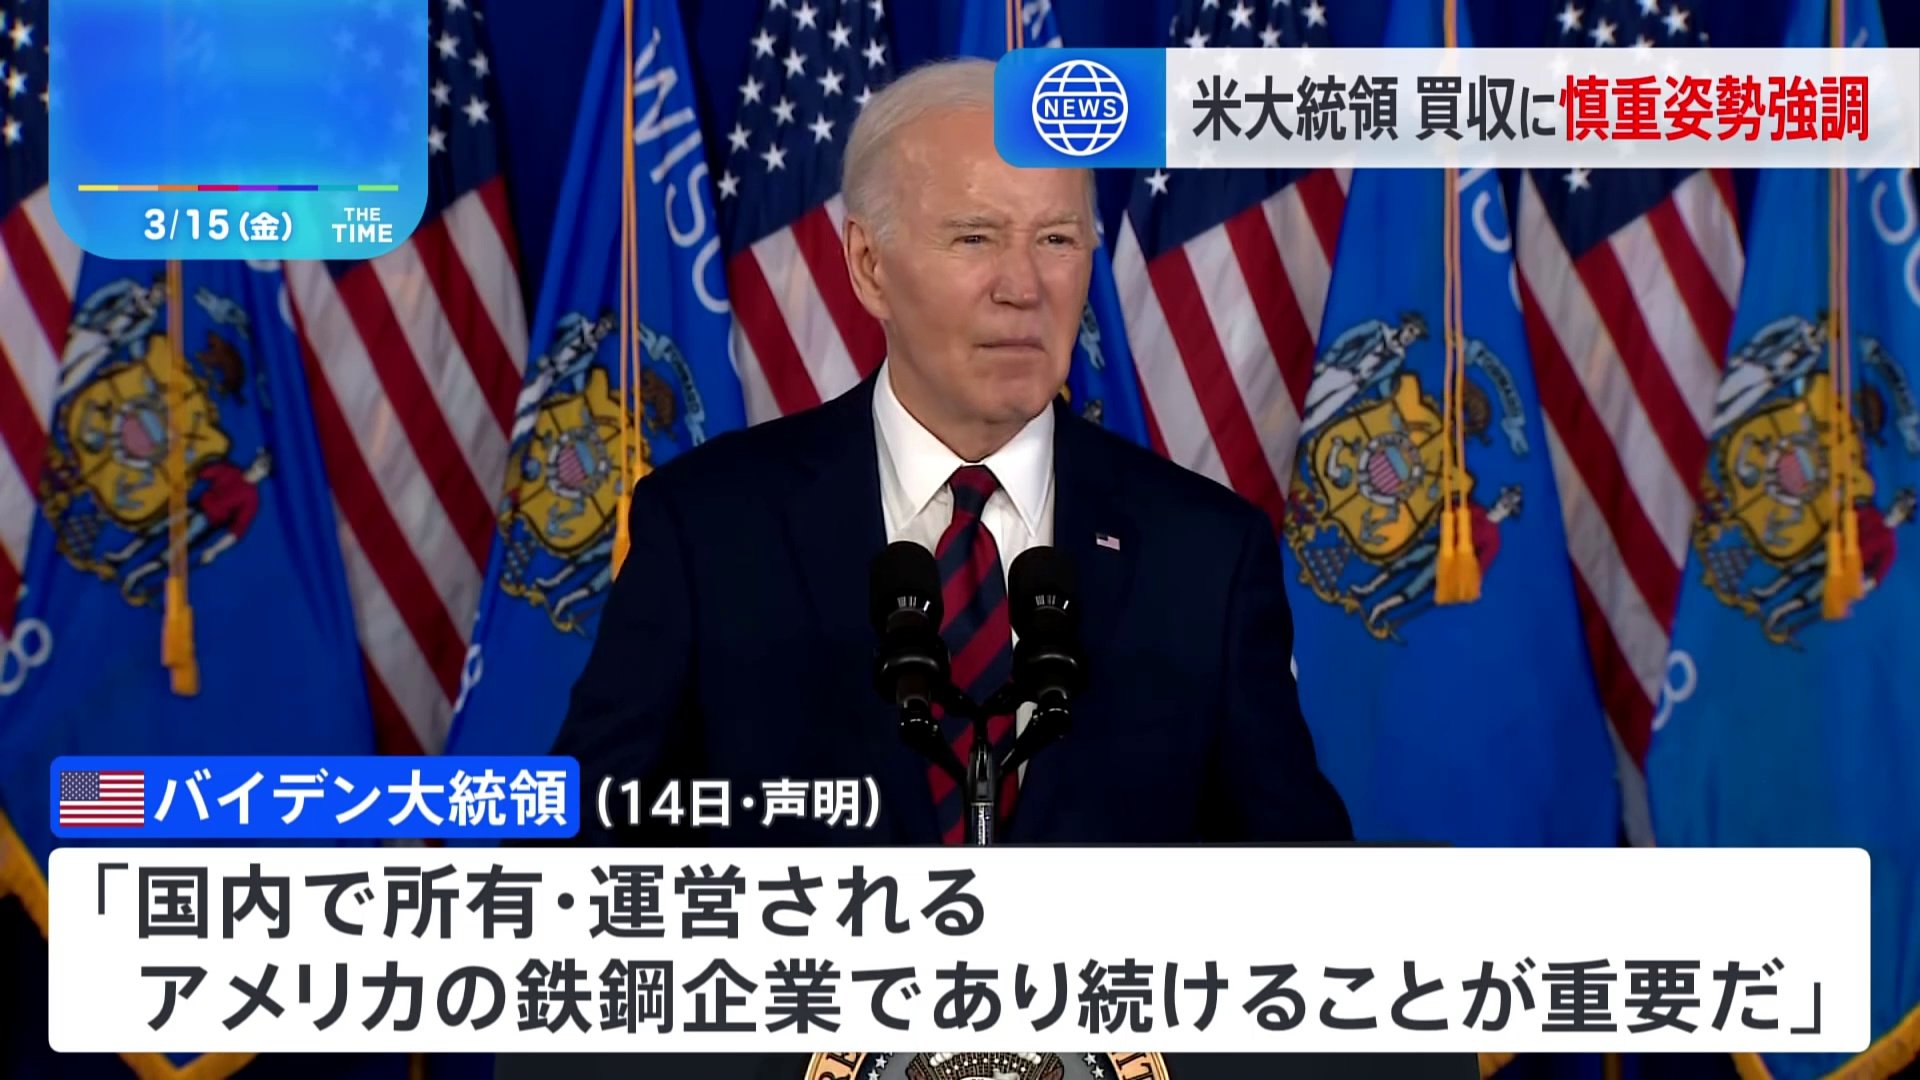 米・バイデン大統領「USスチールは国内所有を」日本製鉄による買収に慎重姿勢強調の声明